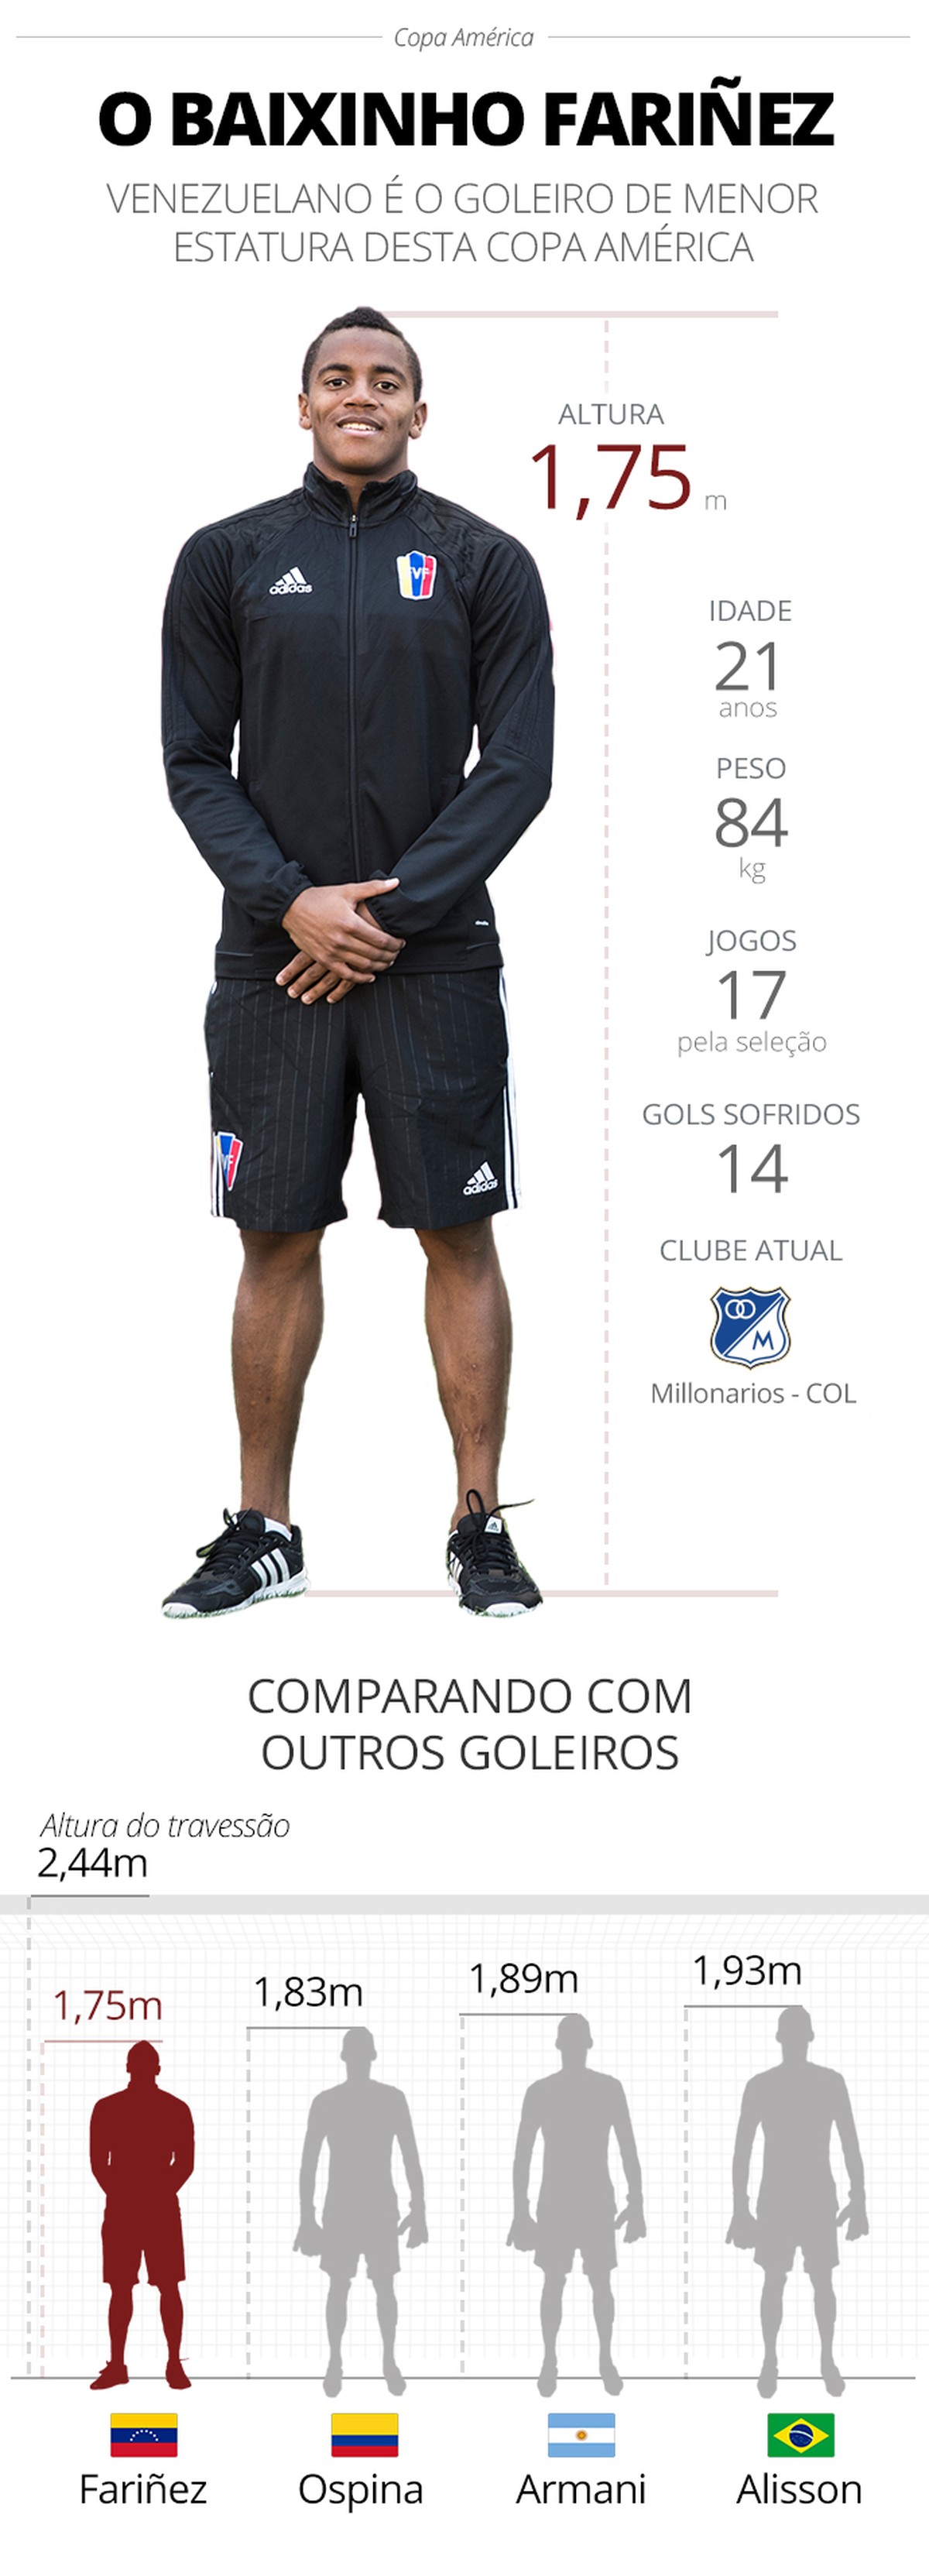 Conheça Gott, o maior goleiro do Gauchão 2013 com 2m01cm de altura